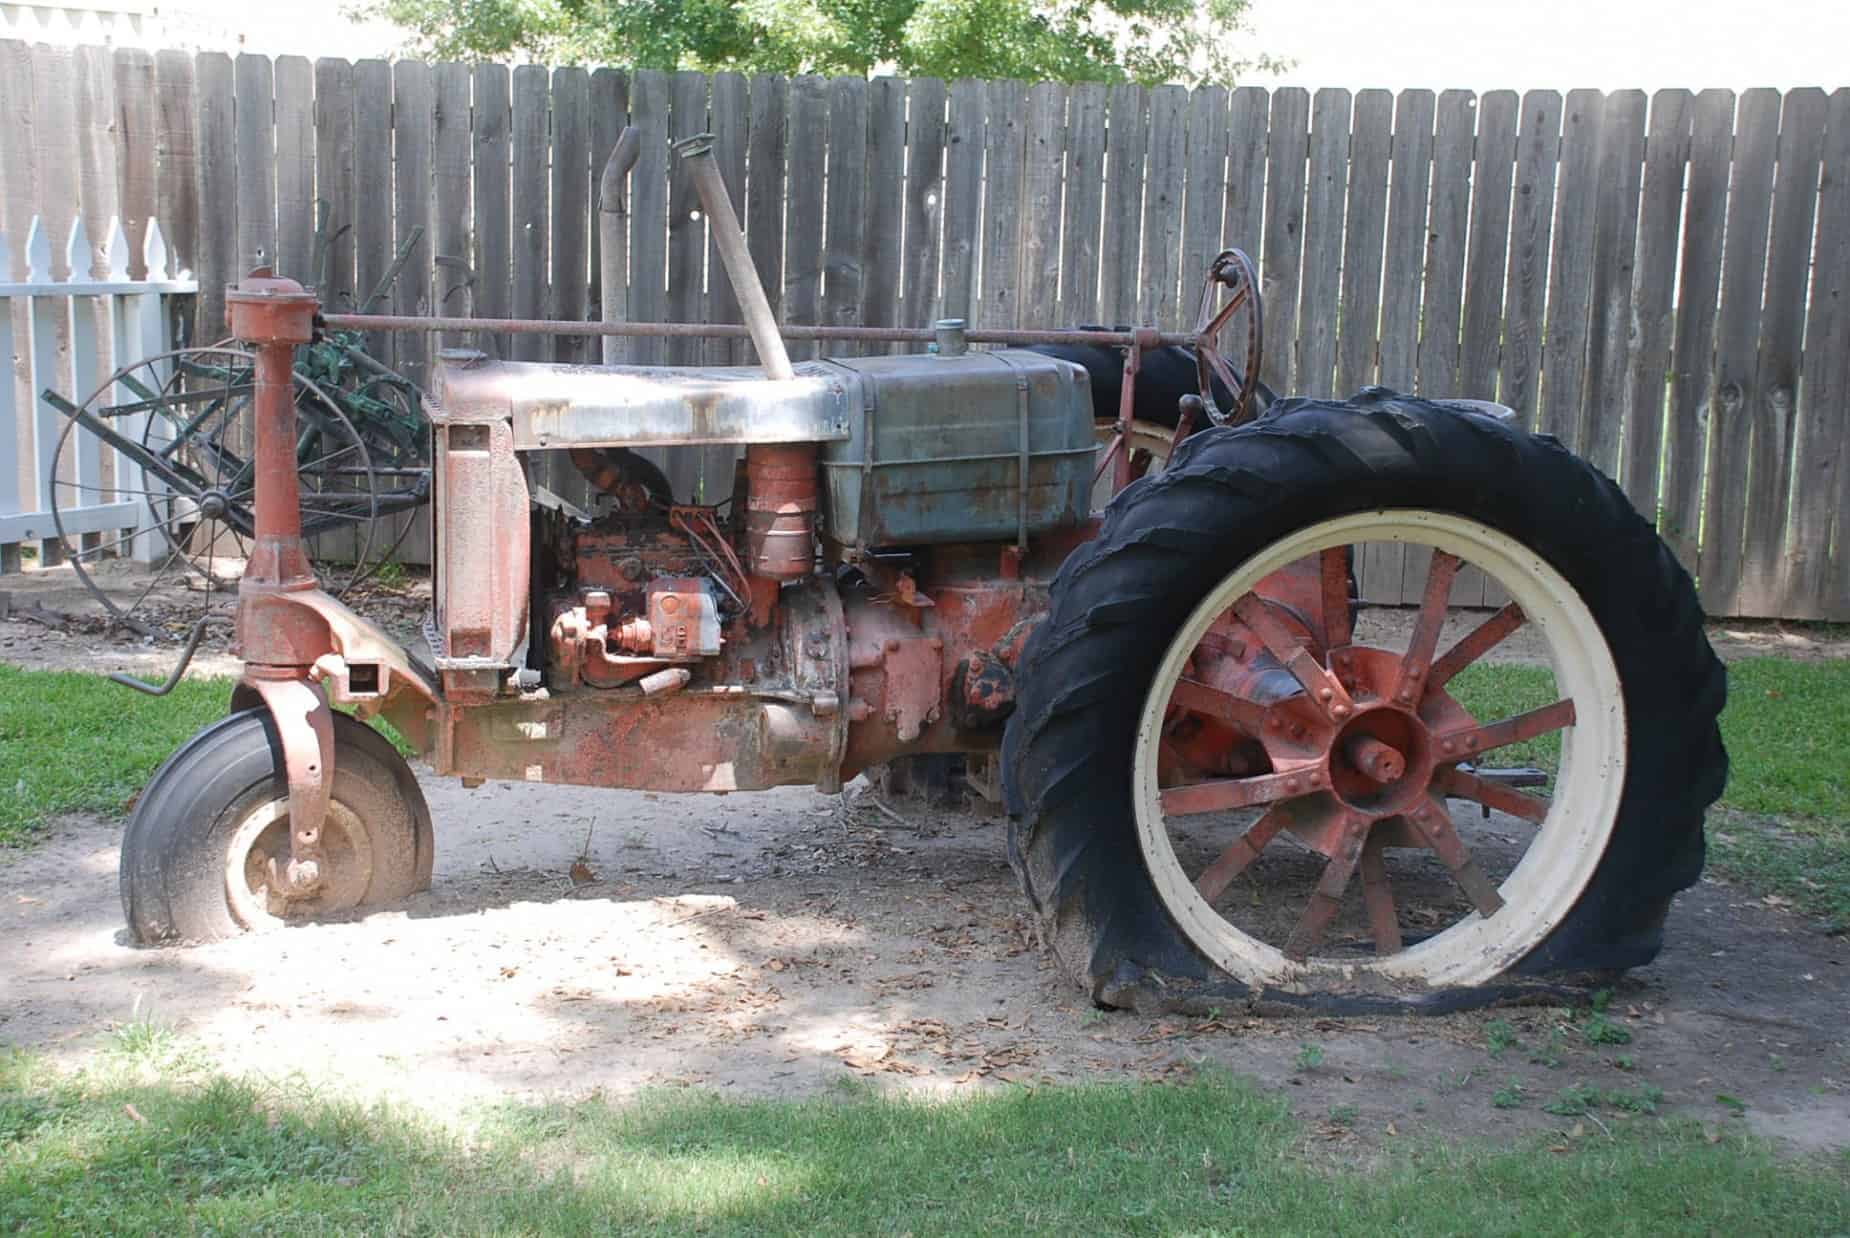 Original Farming Equipment at Cypress Top Historic Park